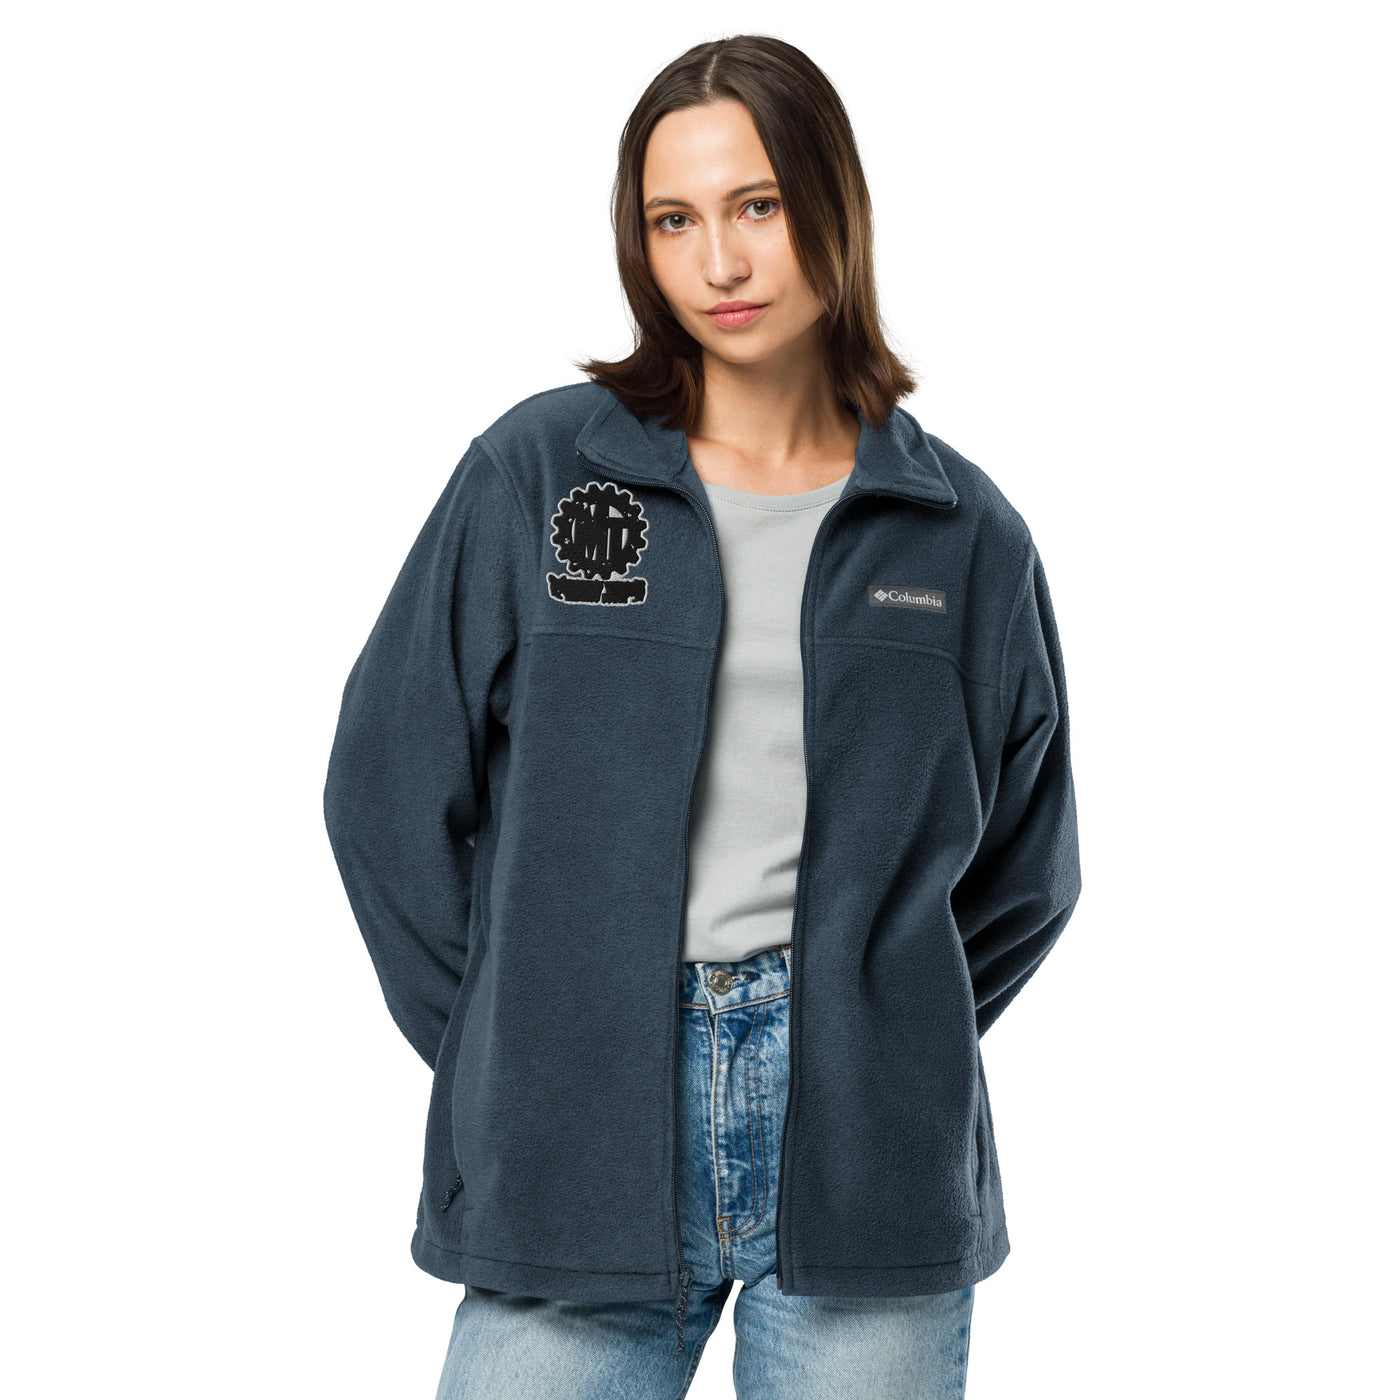 Unisex Columbia fleece jacket